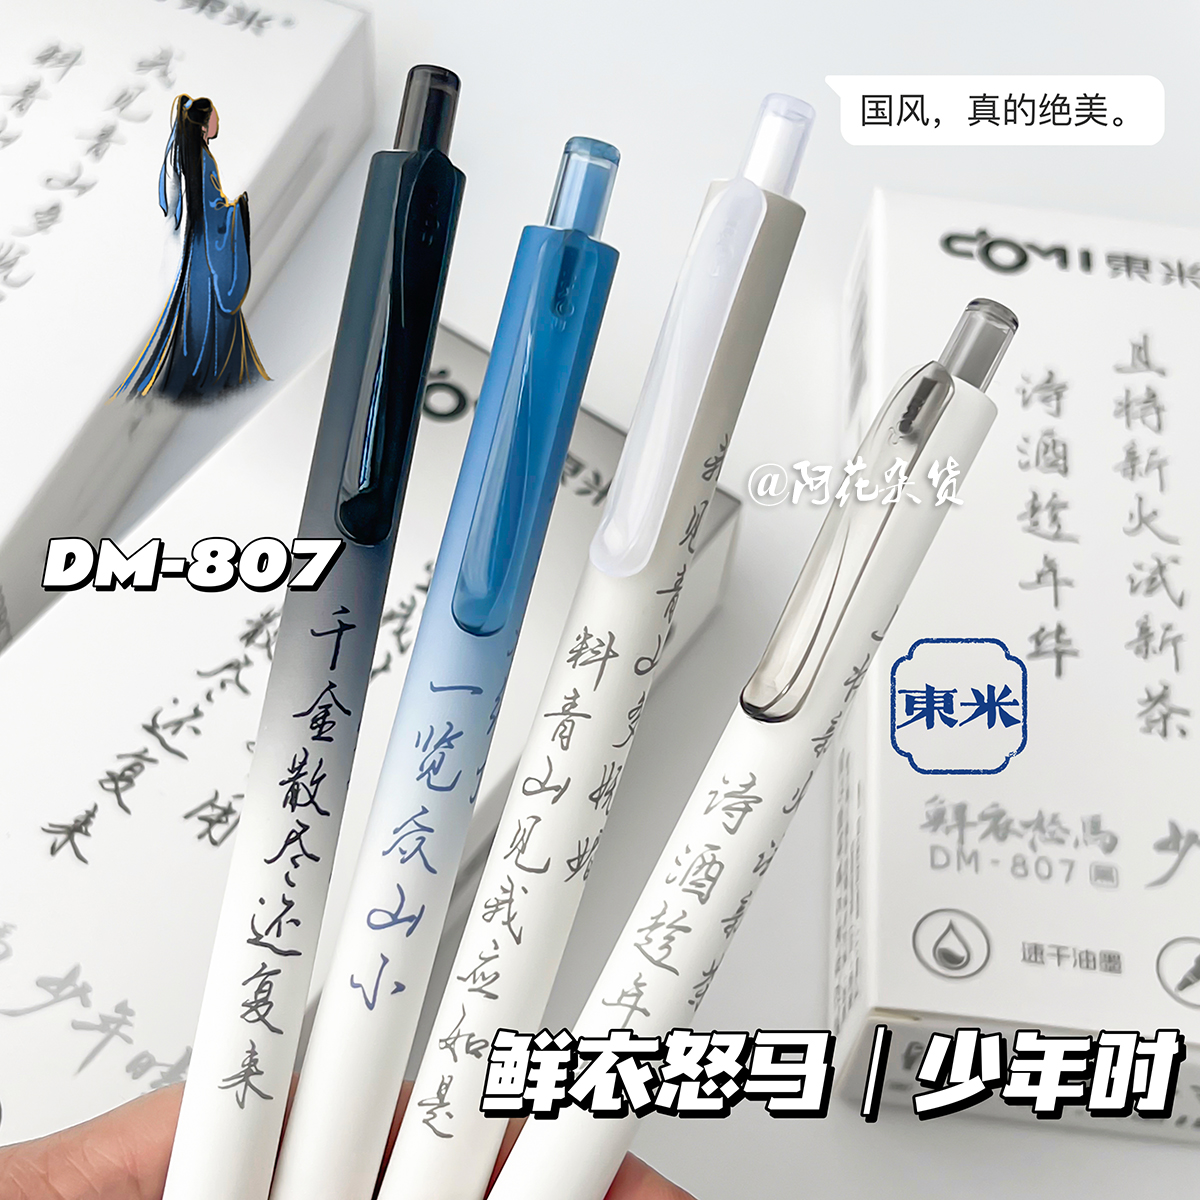 阿花杂货丨东米807中国风中性笔高颜值简约速干刷题笔按动式黑笔